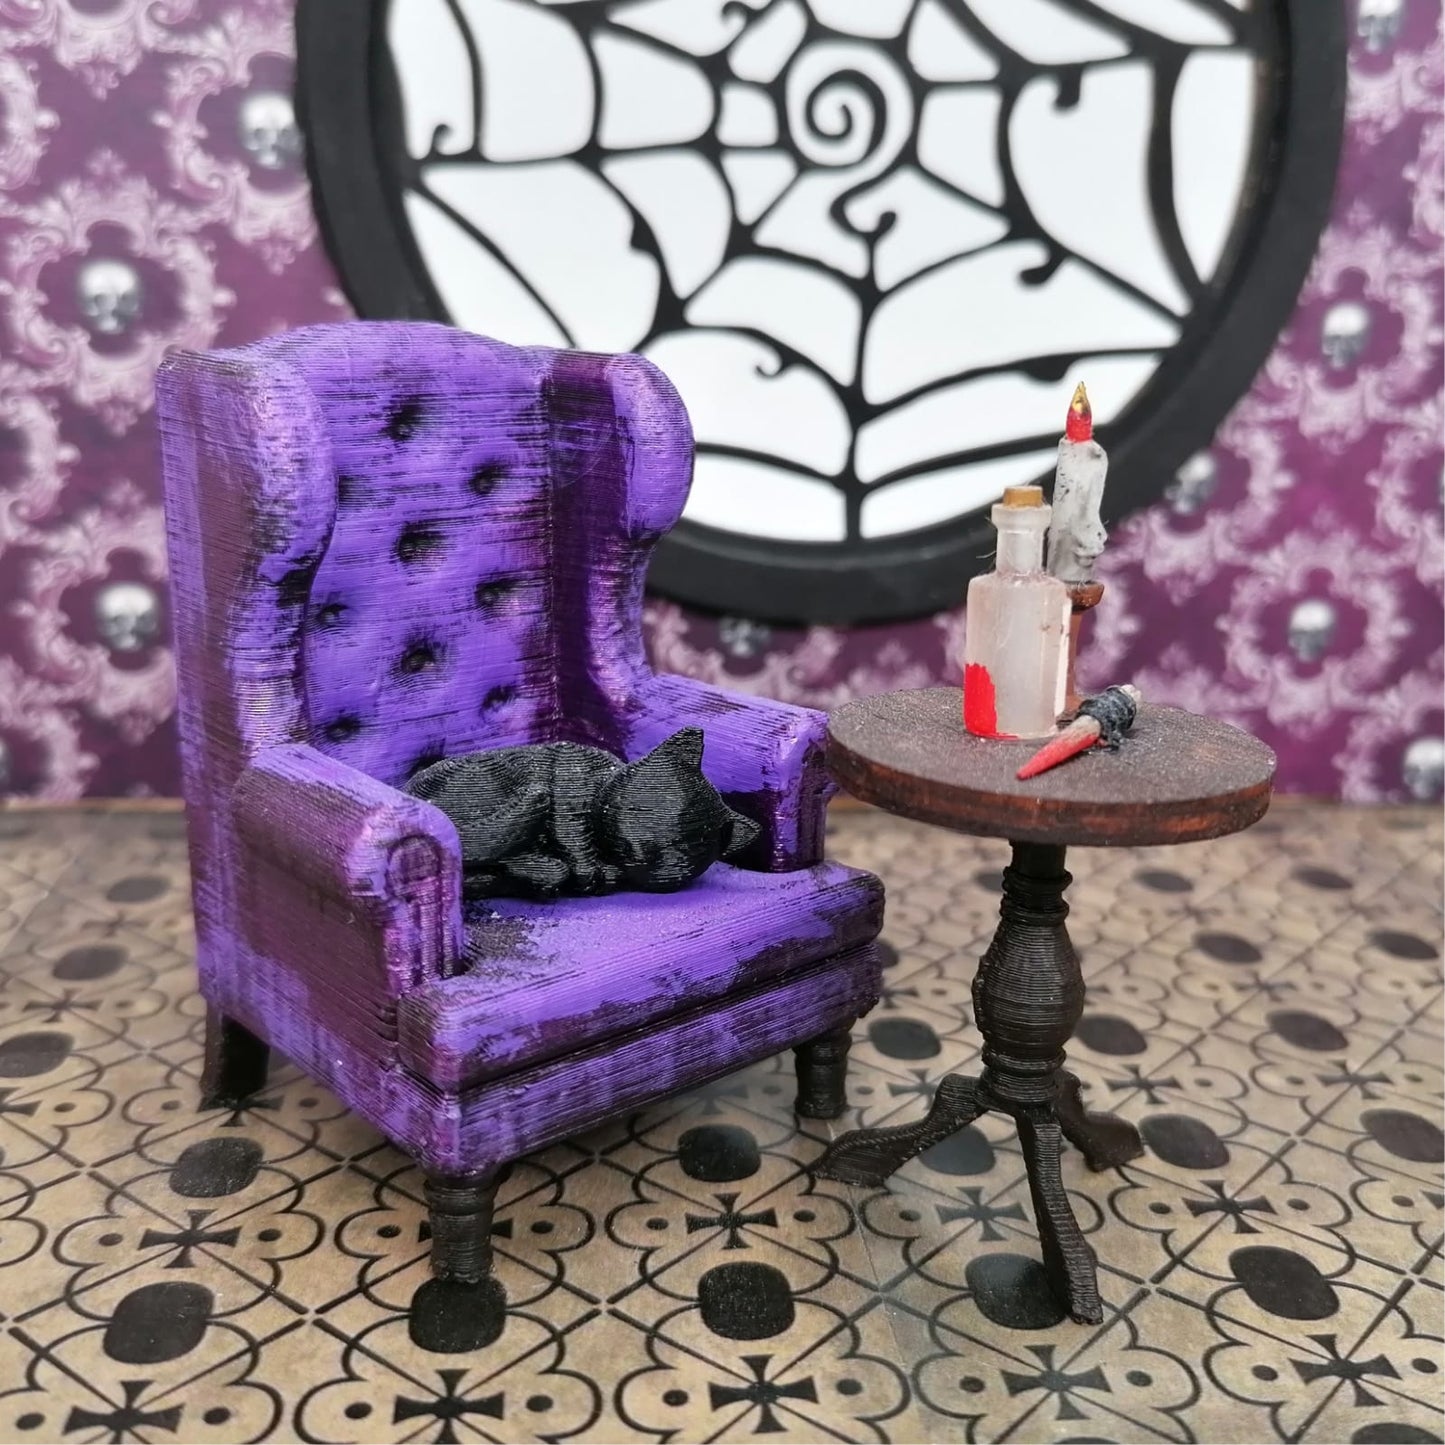 a purple teddy bear sitting on a chair 